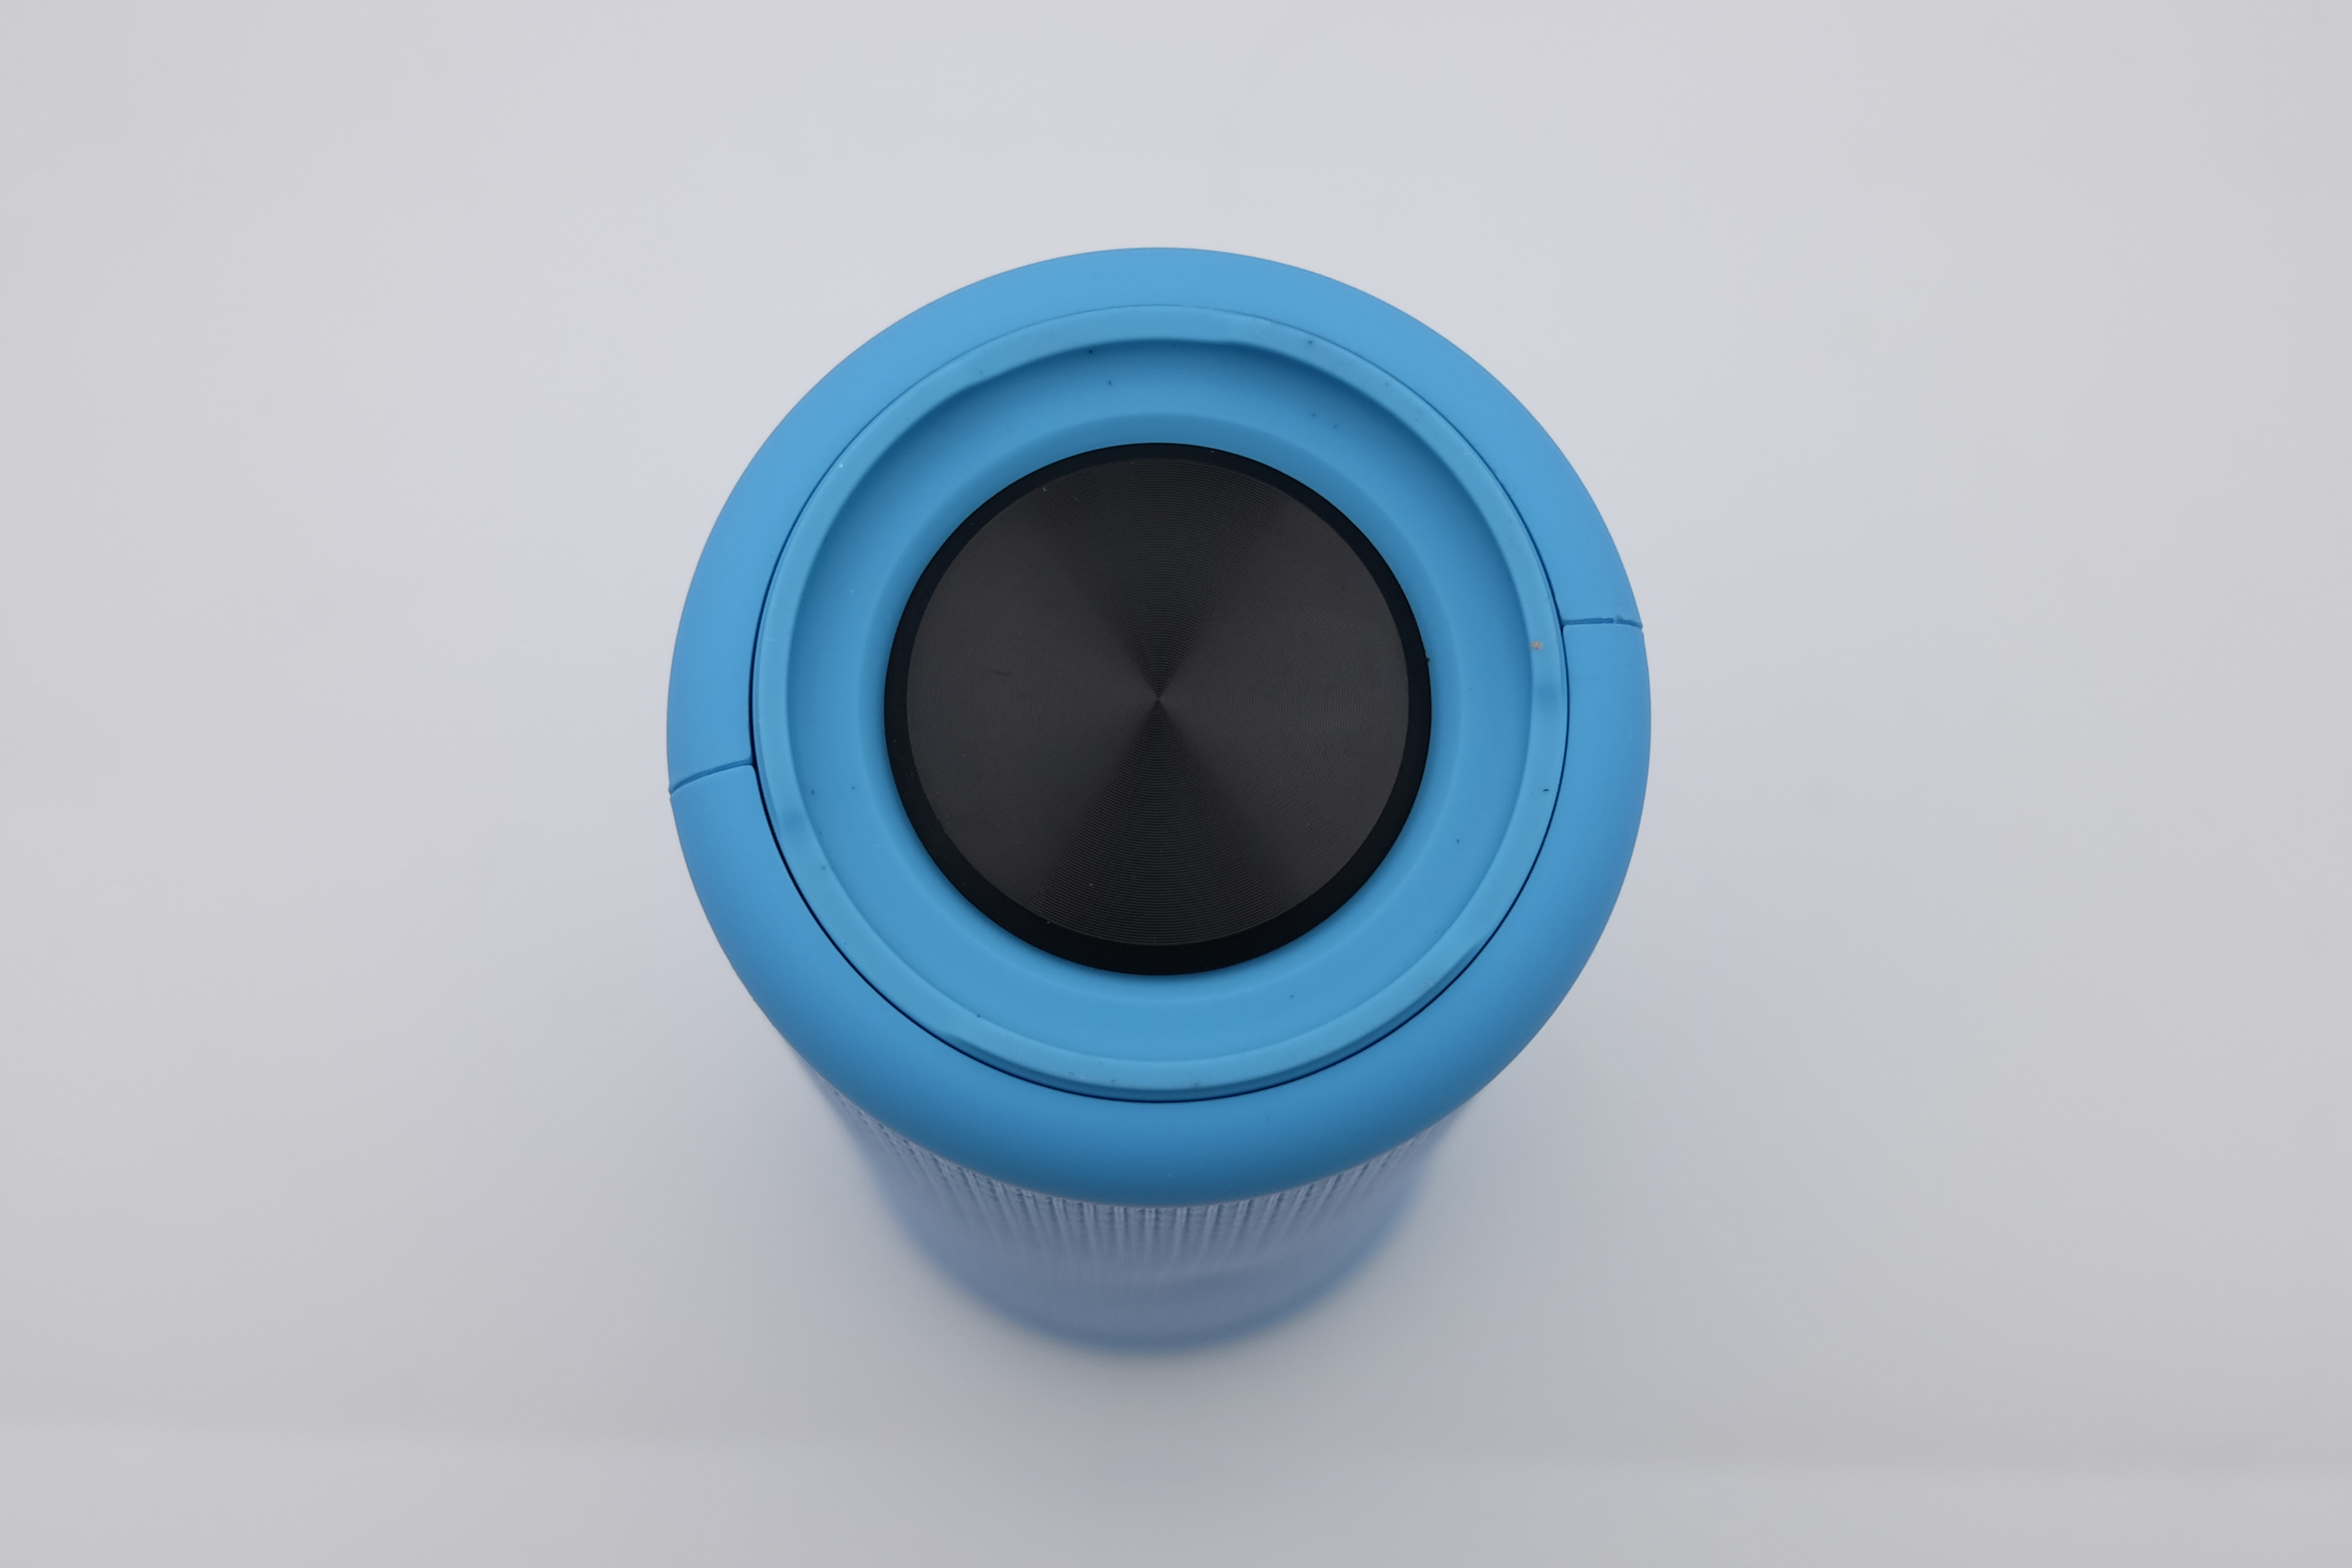 Sylvania 8" Premium Rugged  Water Resistant Bluetooth Speaker 360° Sound, Brilliant Blue, SP1043 - image 3 of 7